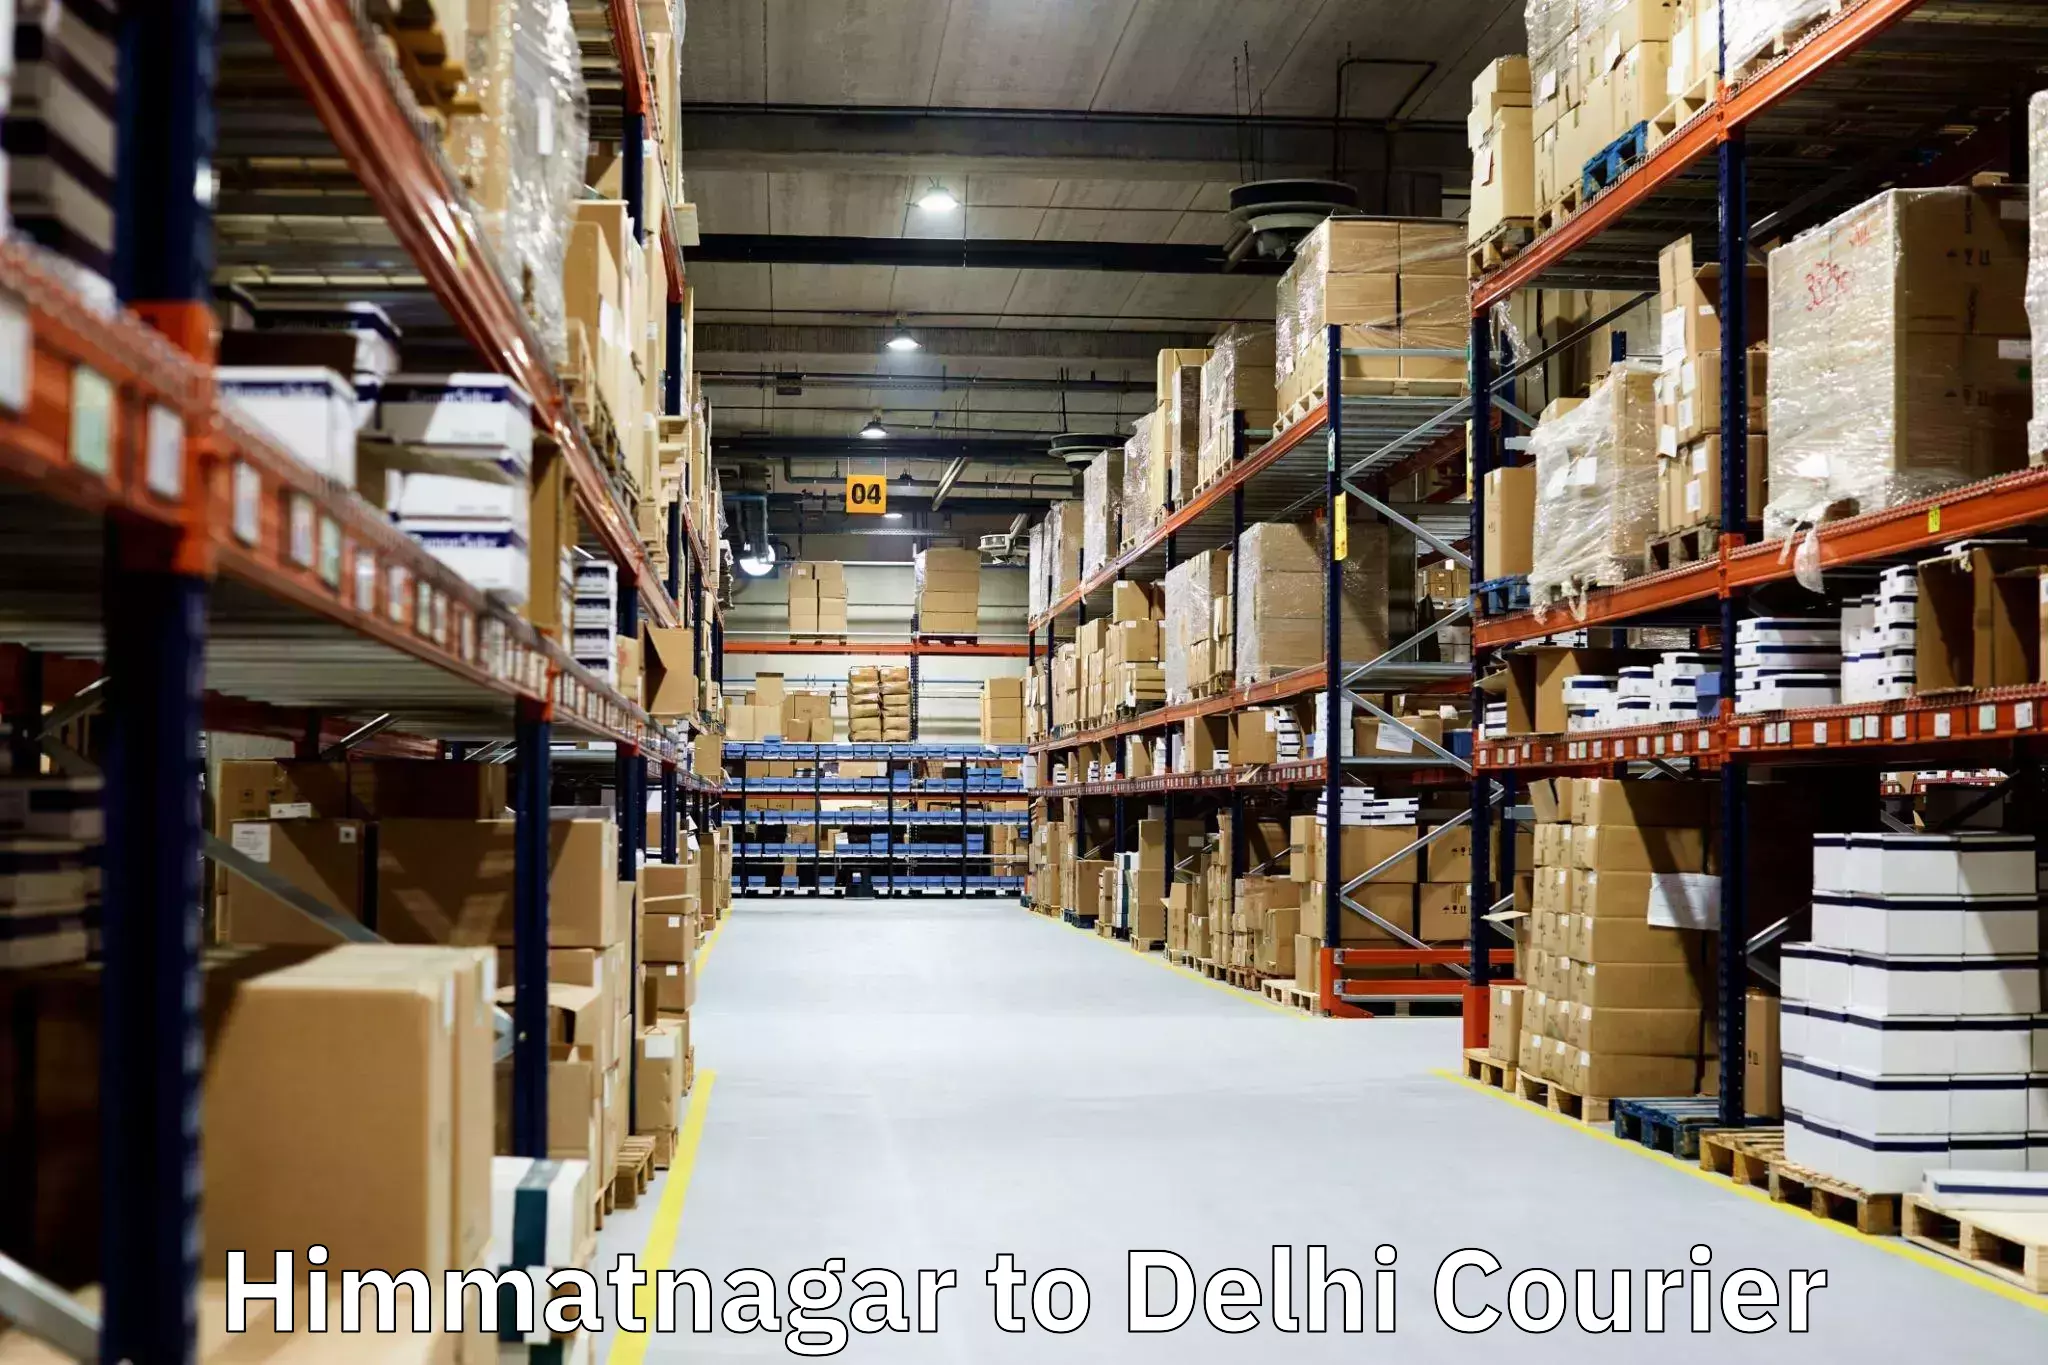 Moving and packing experts Himmatnagar to NIT Delhi